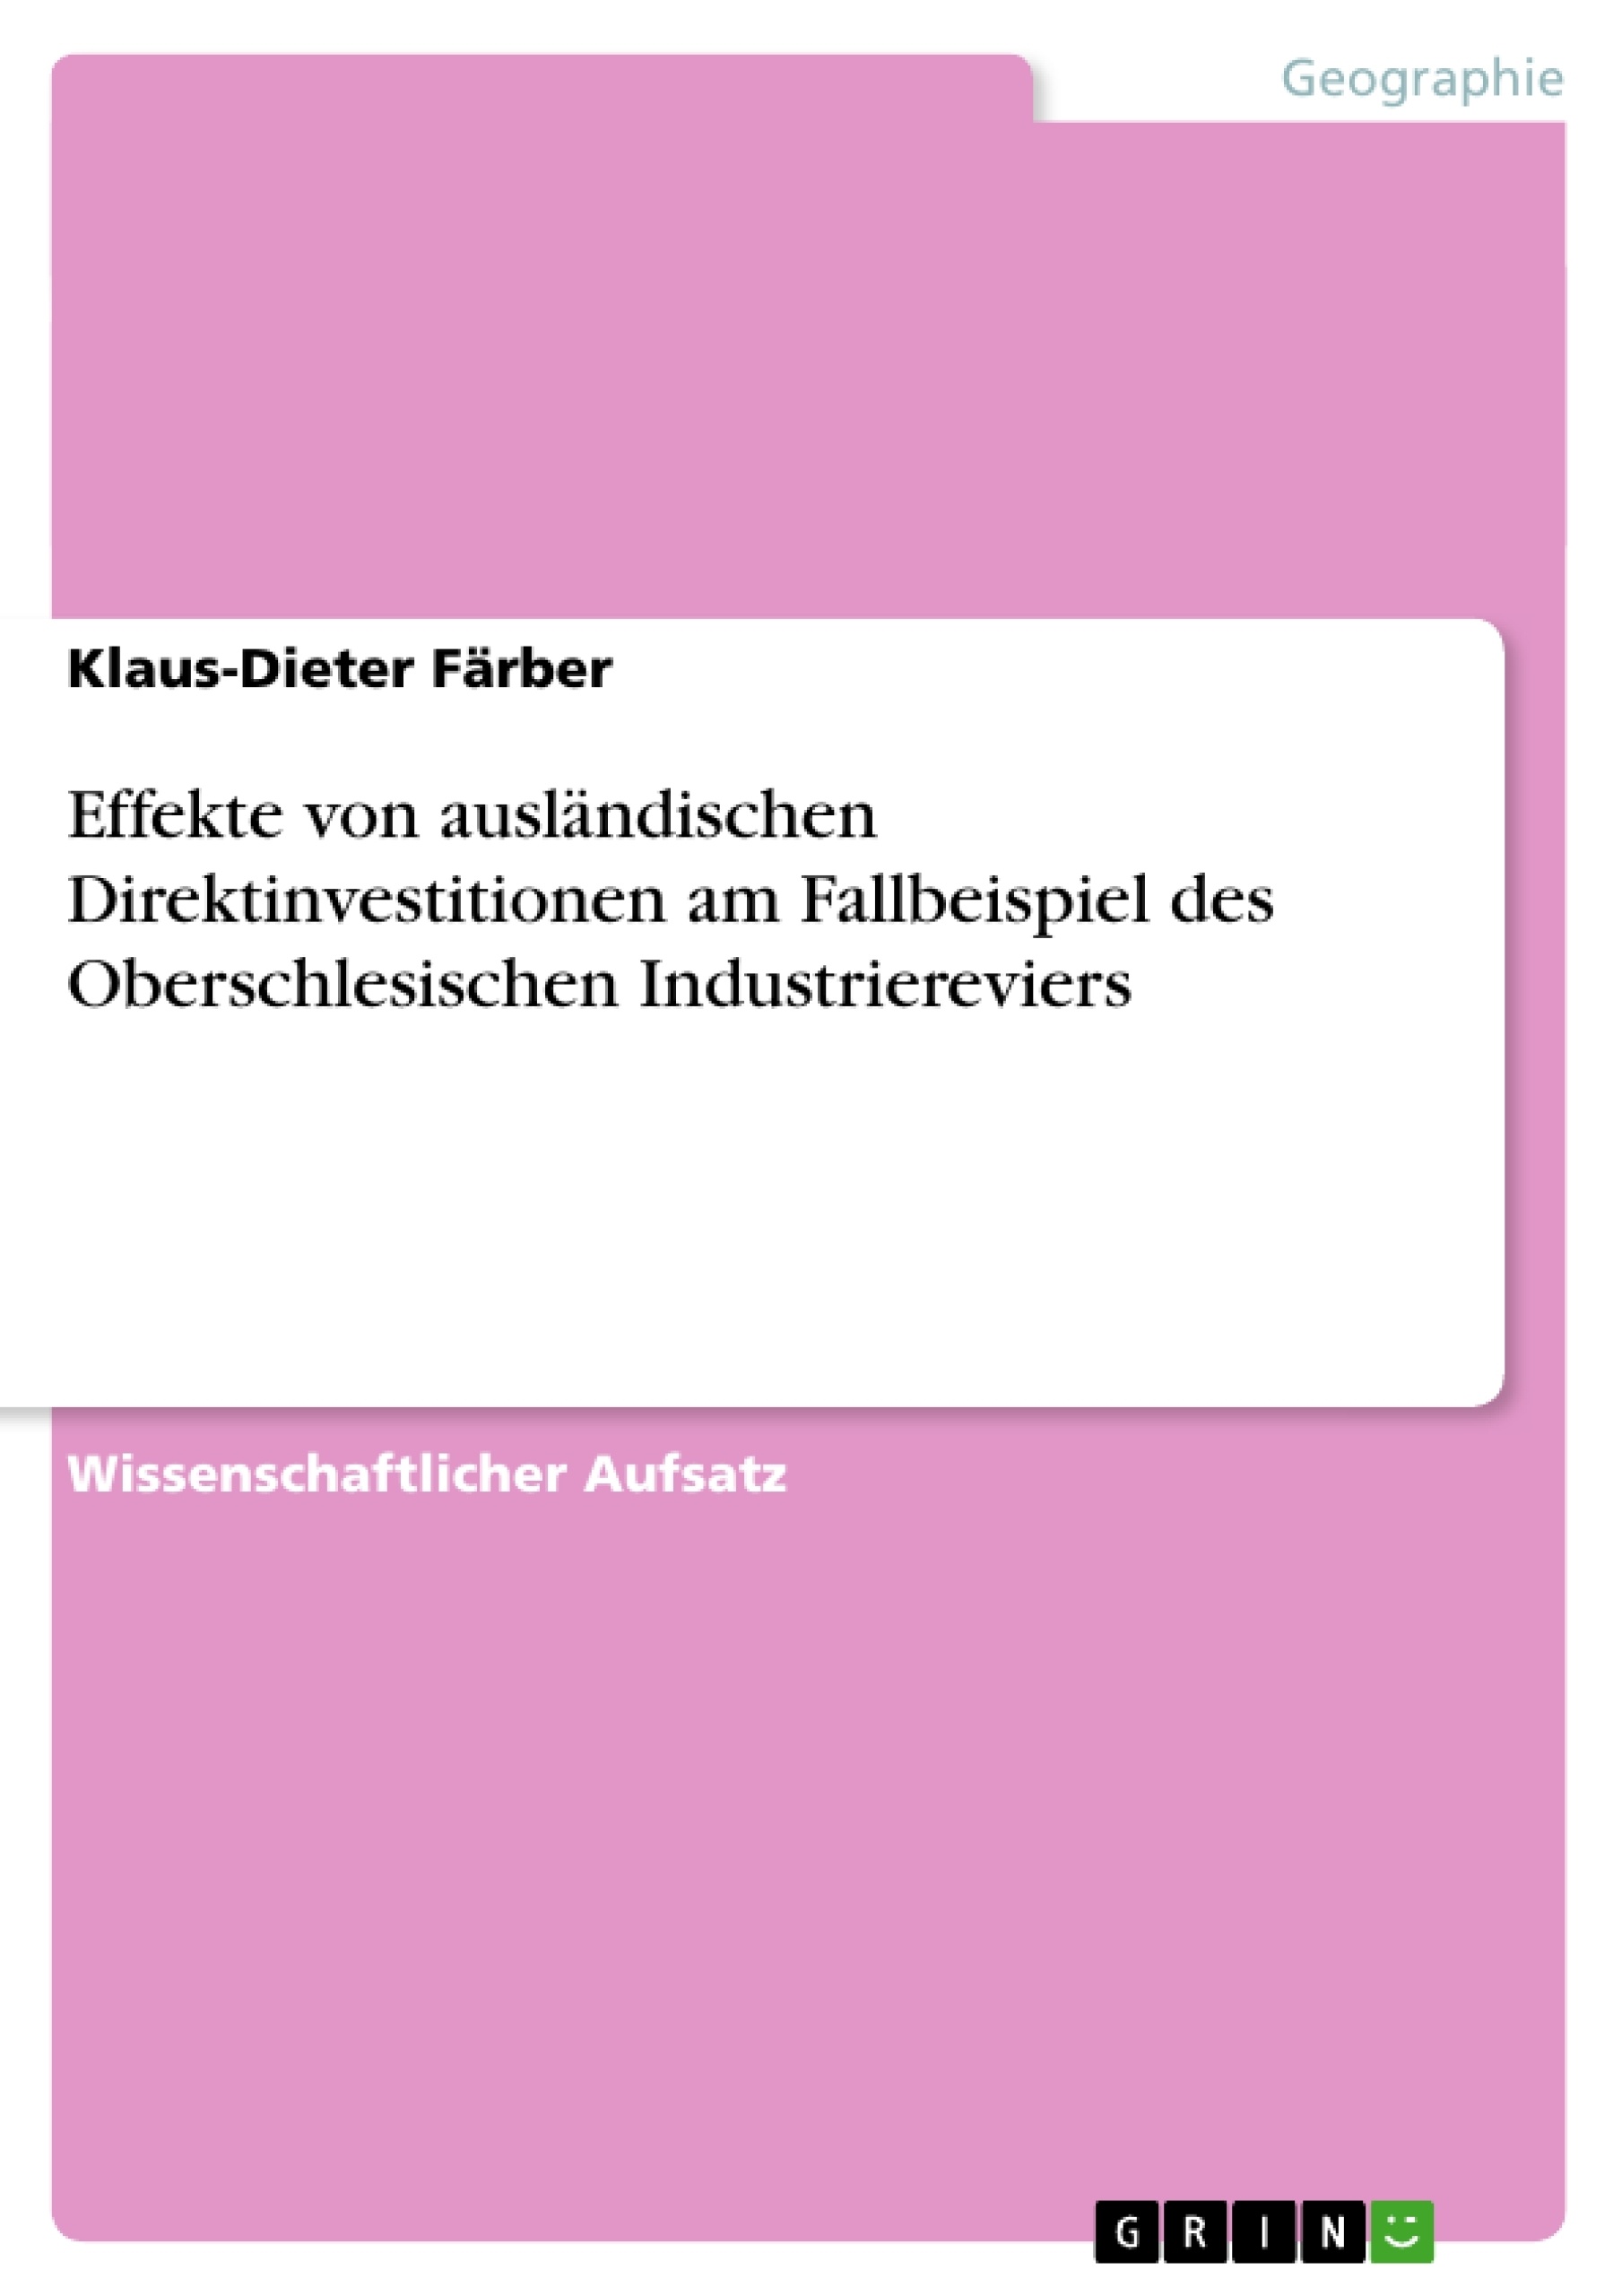 Title: Effekte von ausländischen Direktinvestitionen am Fallbeispiel des Oberschlesischen Industriereviers